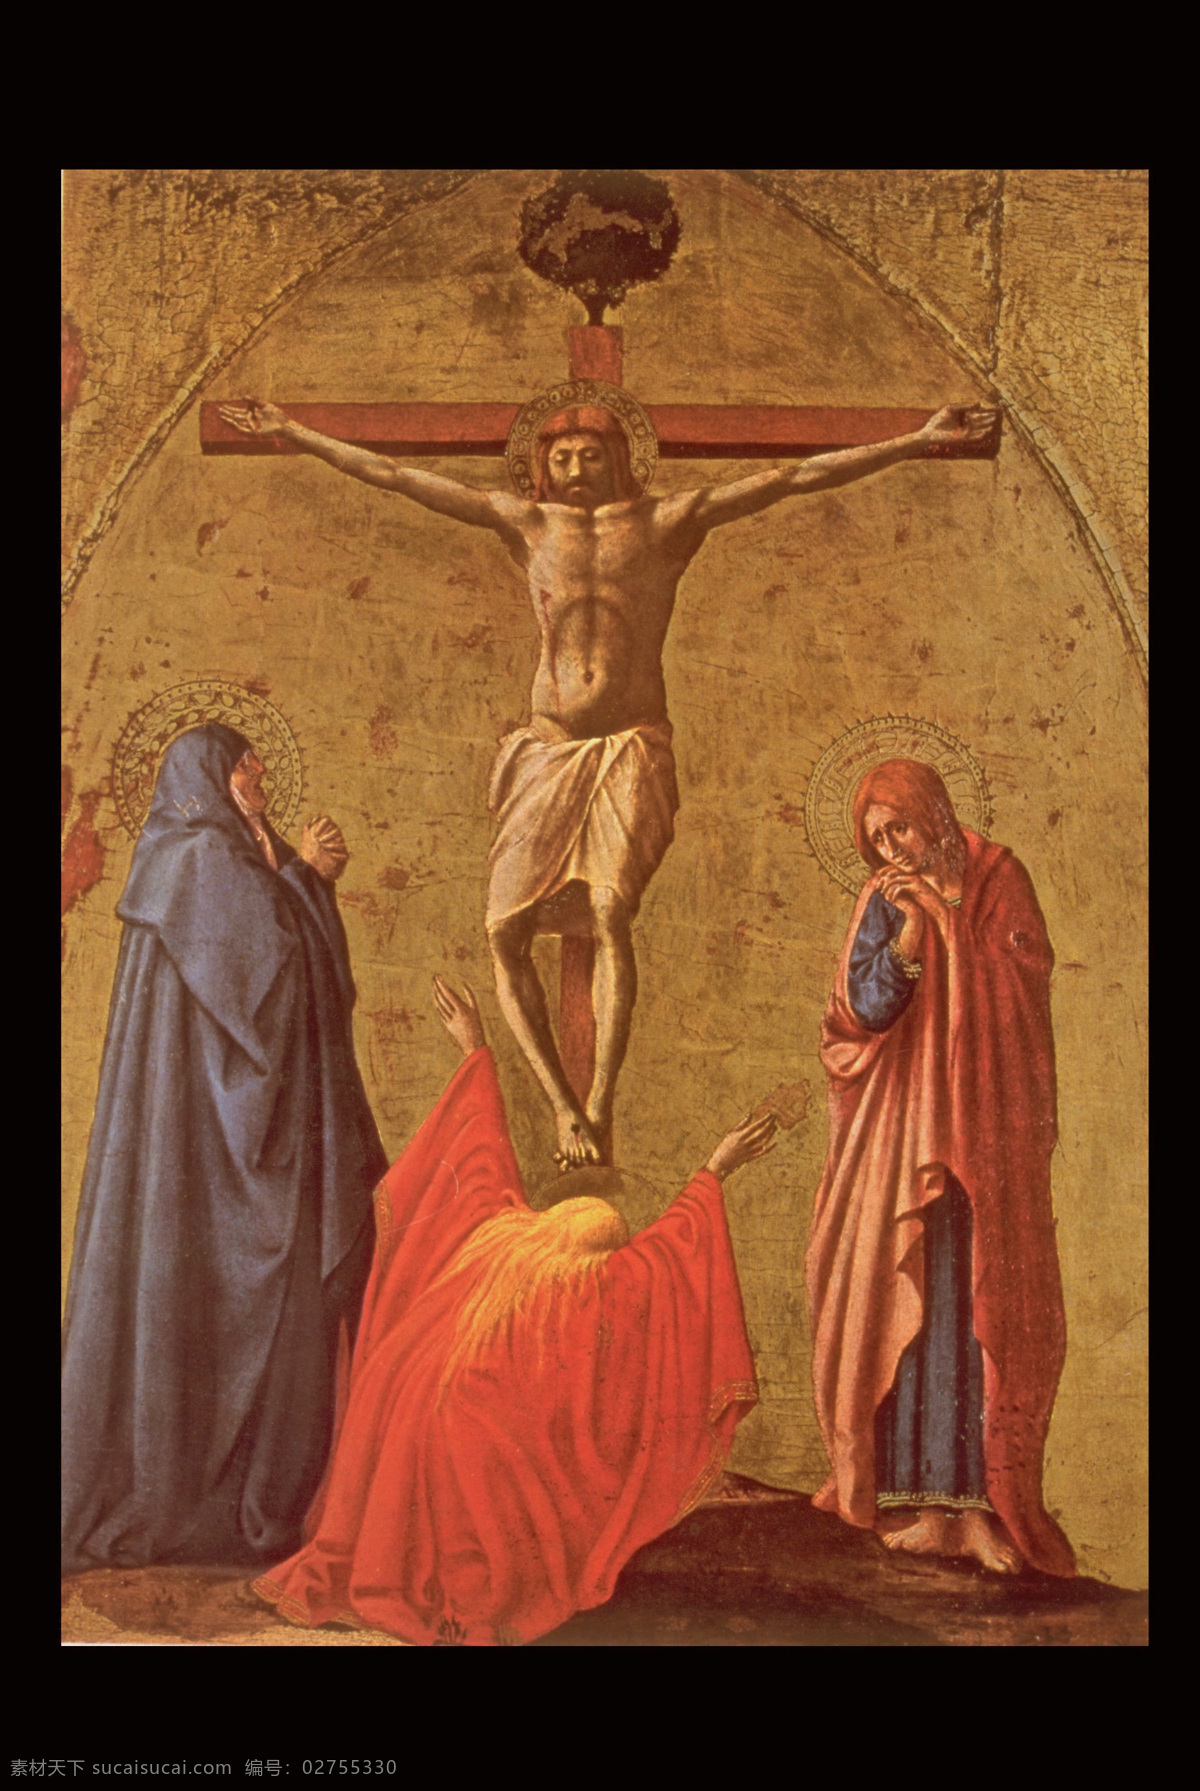 基督 耶稣 油画 油画写生 人物油画 人物写生 十字架 人物肖像画 绘画艺术 装饰画 书画文字 文化艺术